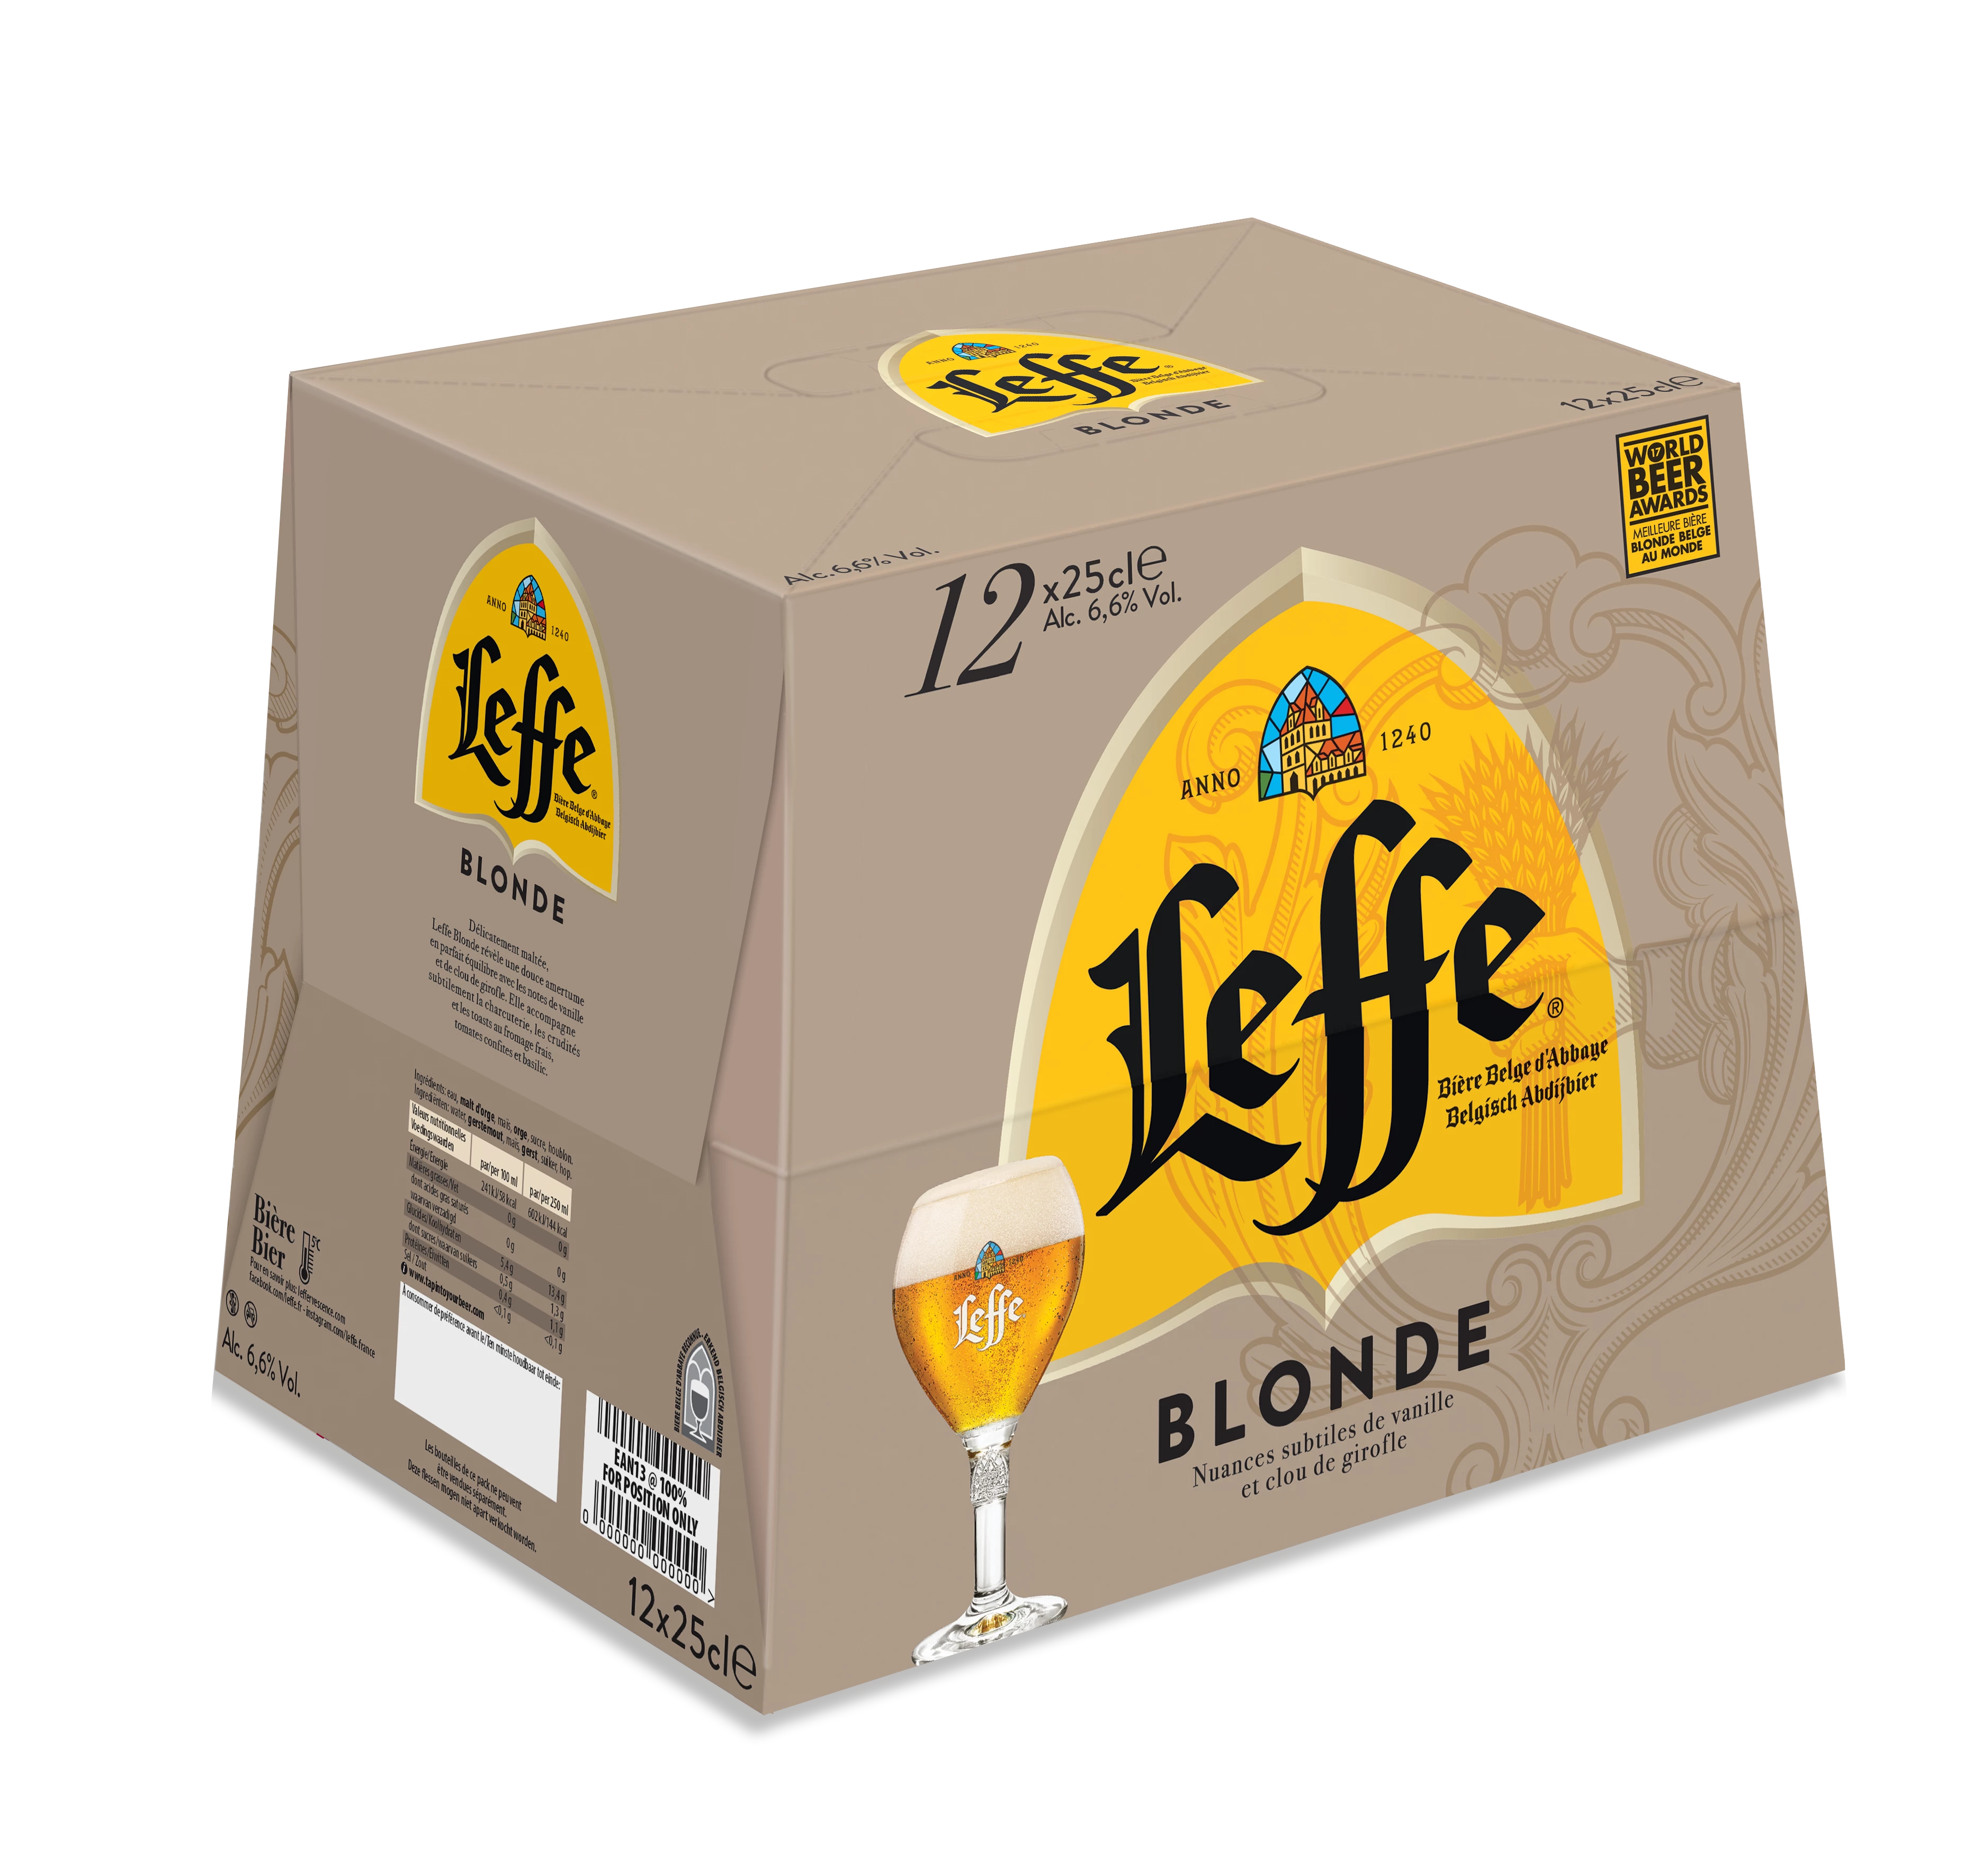 Leffe Blonde 12x25cl 6d6